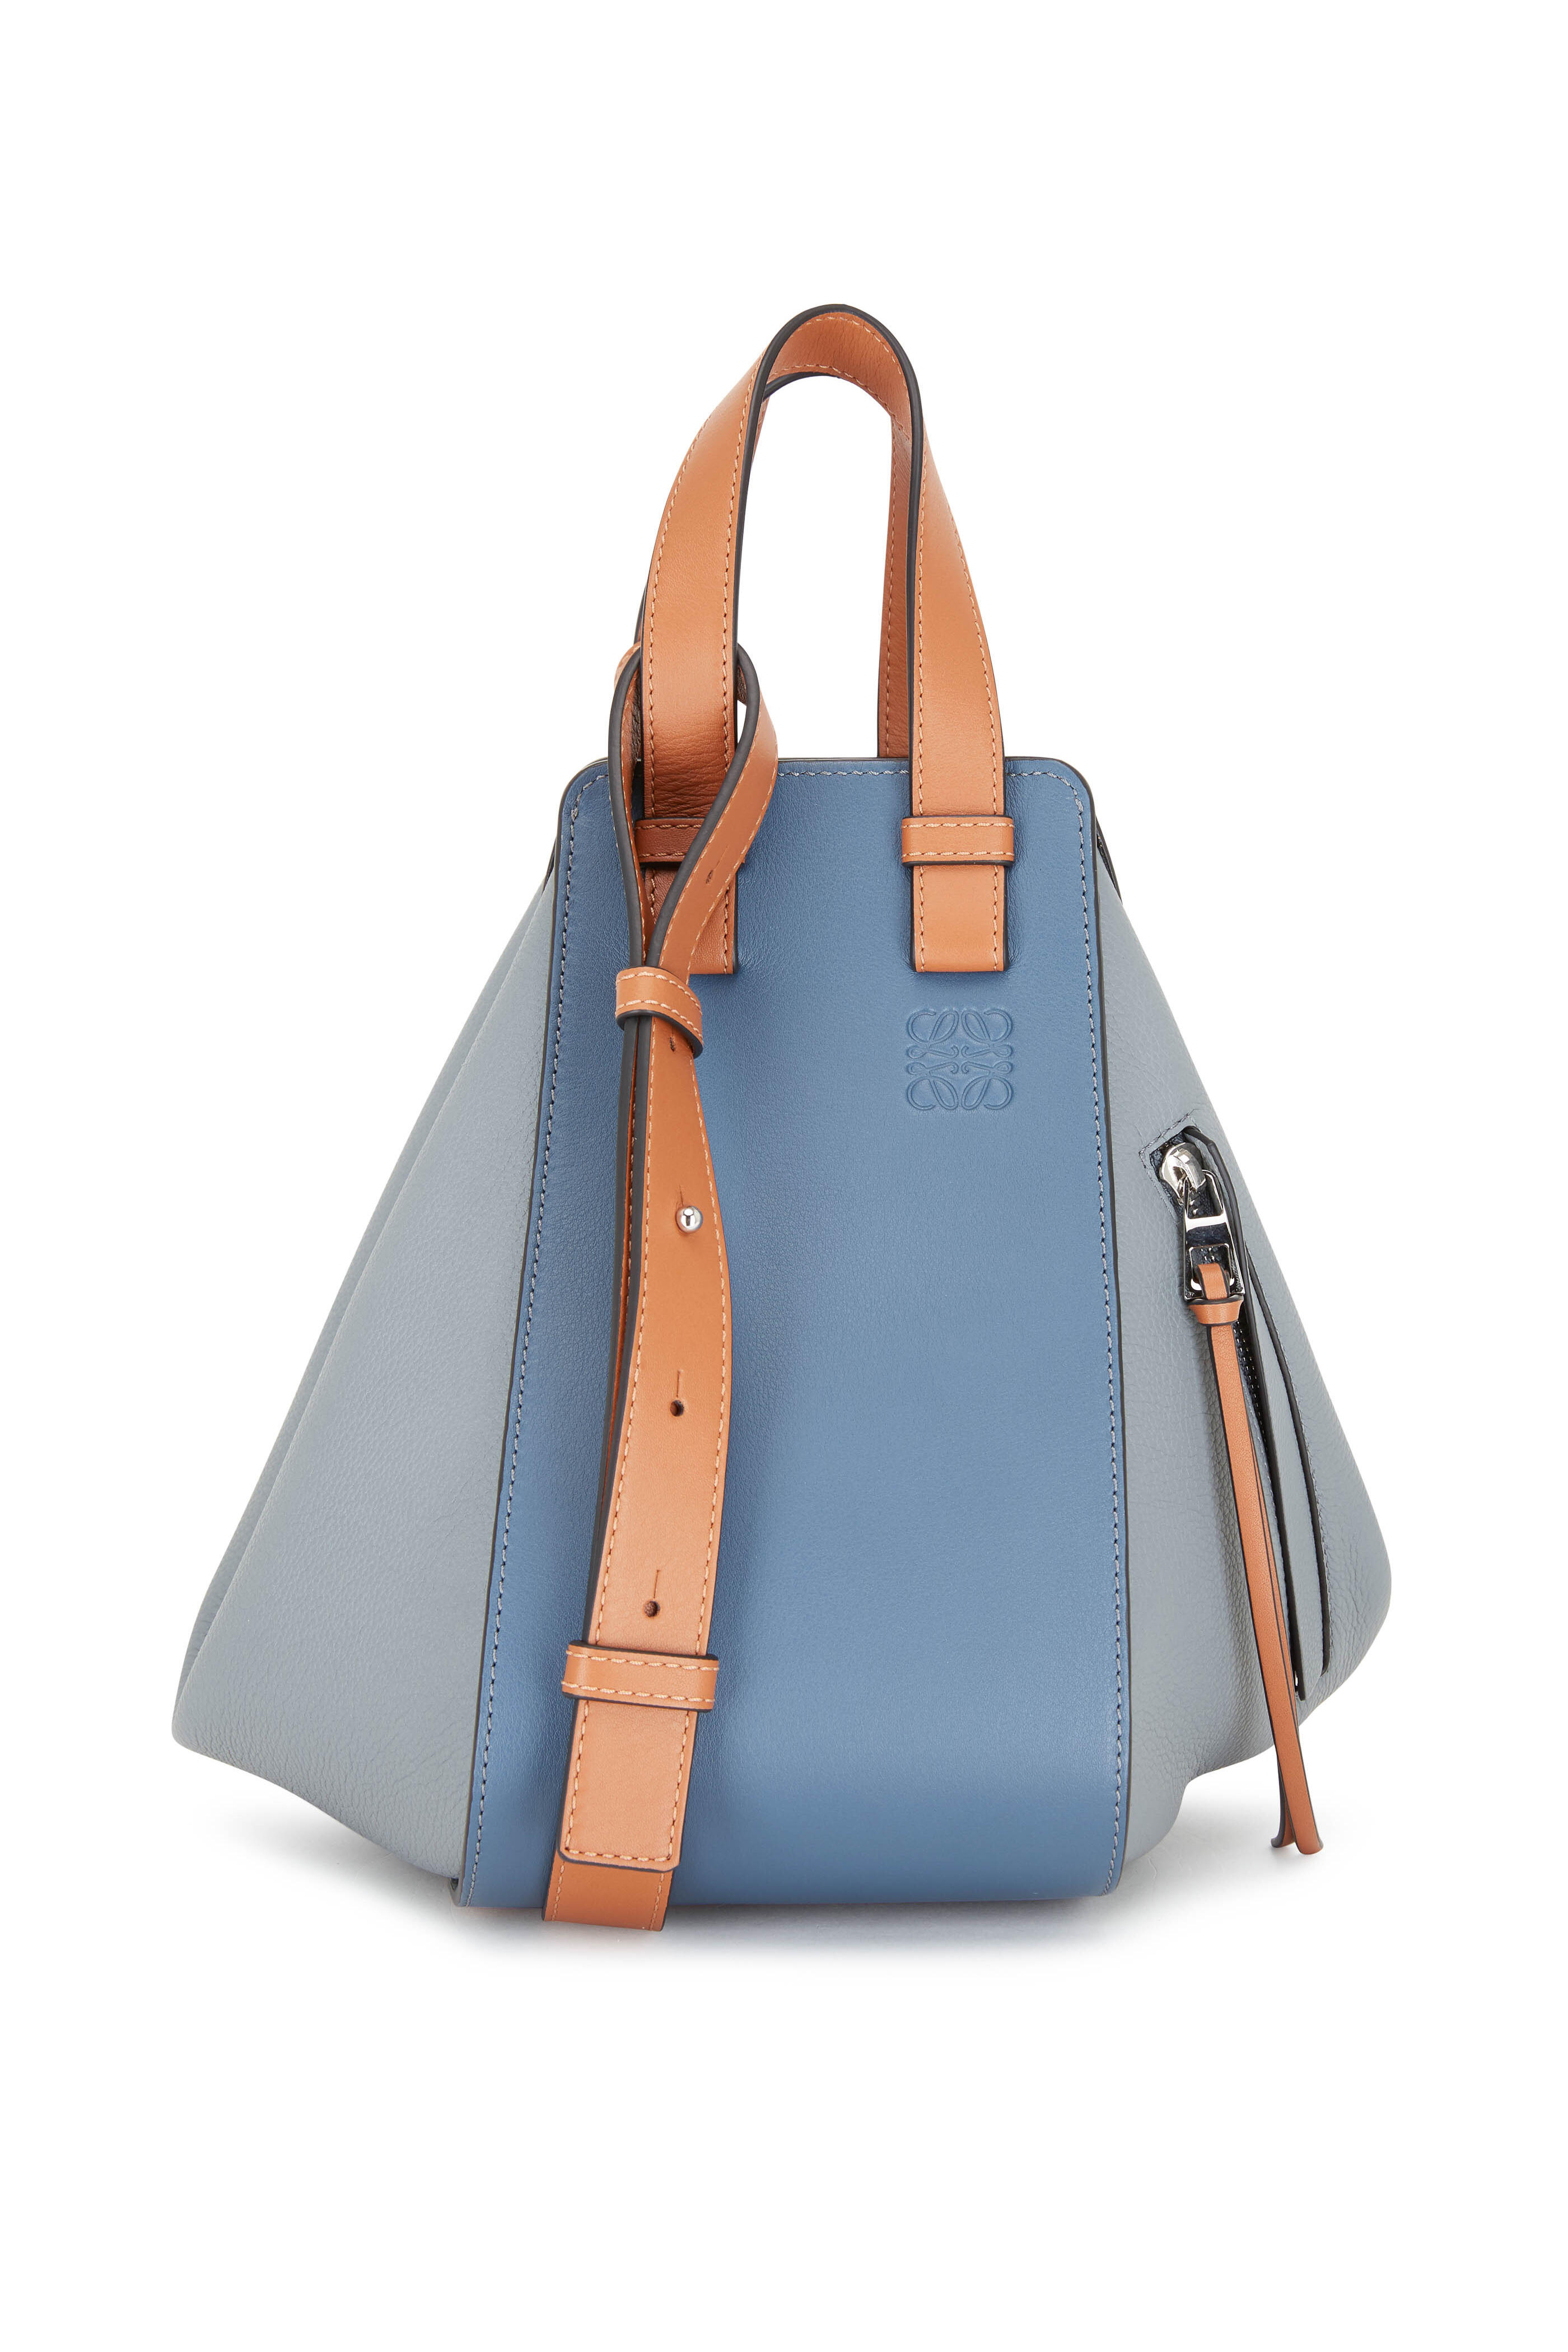 Loewe a large handbag in navy blue leather, Brown Loewe Small Hammock  Bag Satchel